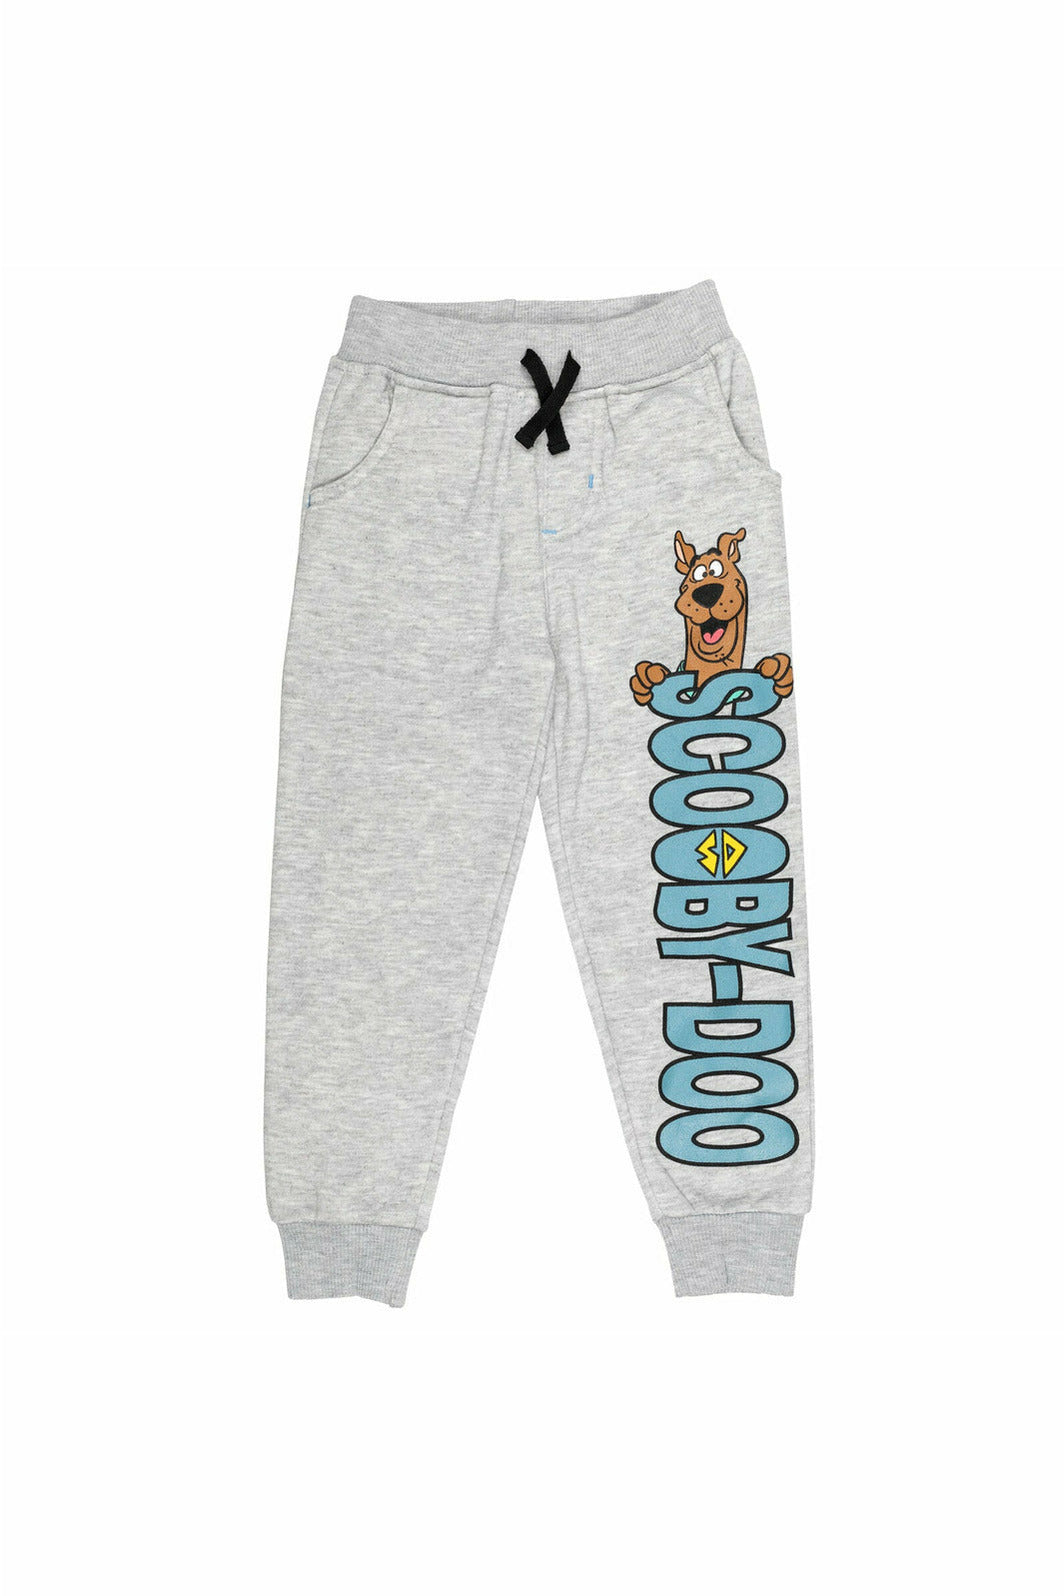 Scooby-Doo Fleece 2 Pack Jogger Pants